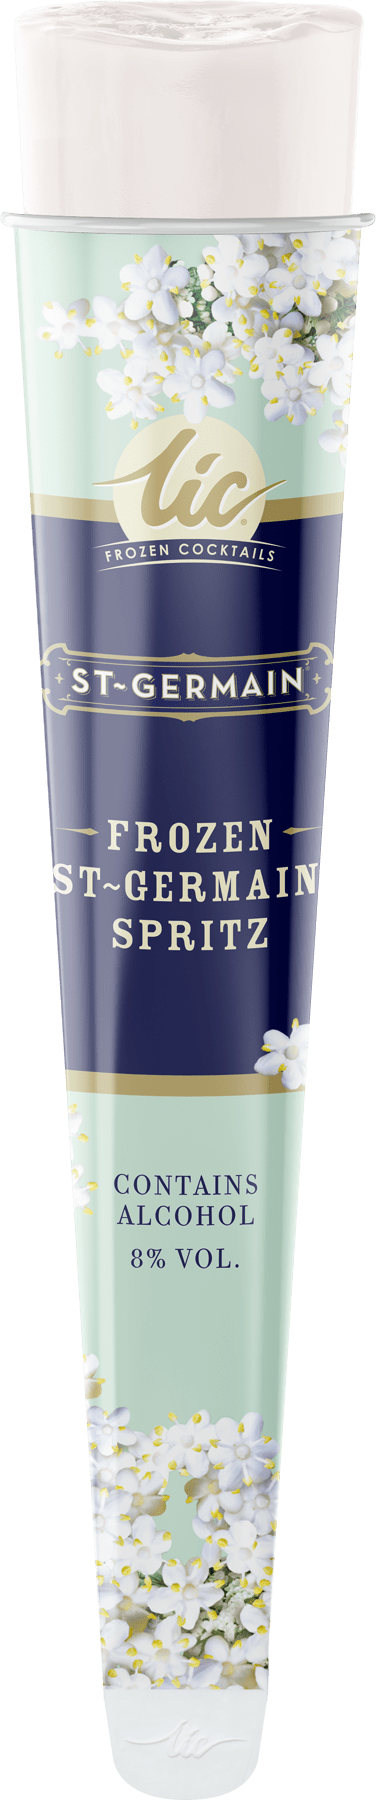 St-Germain Spritz